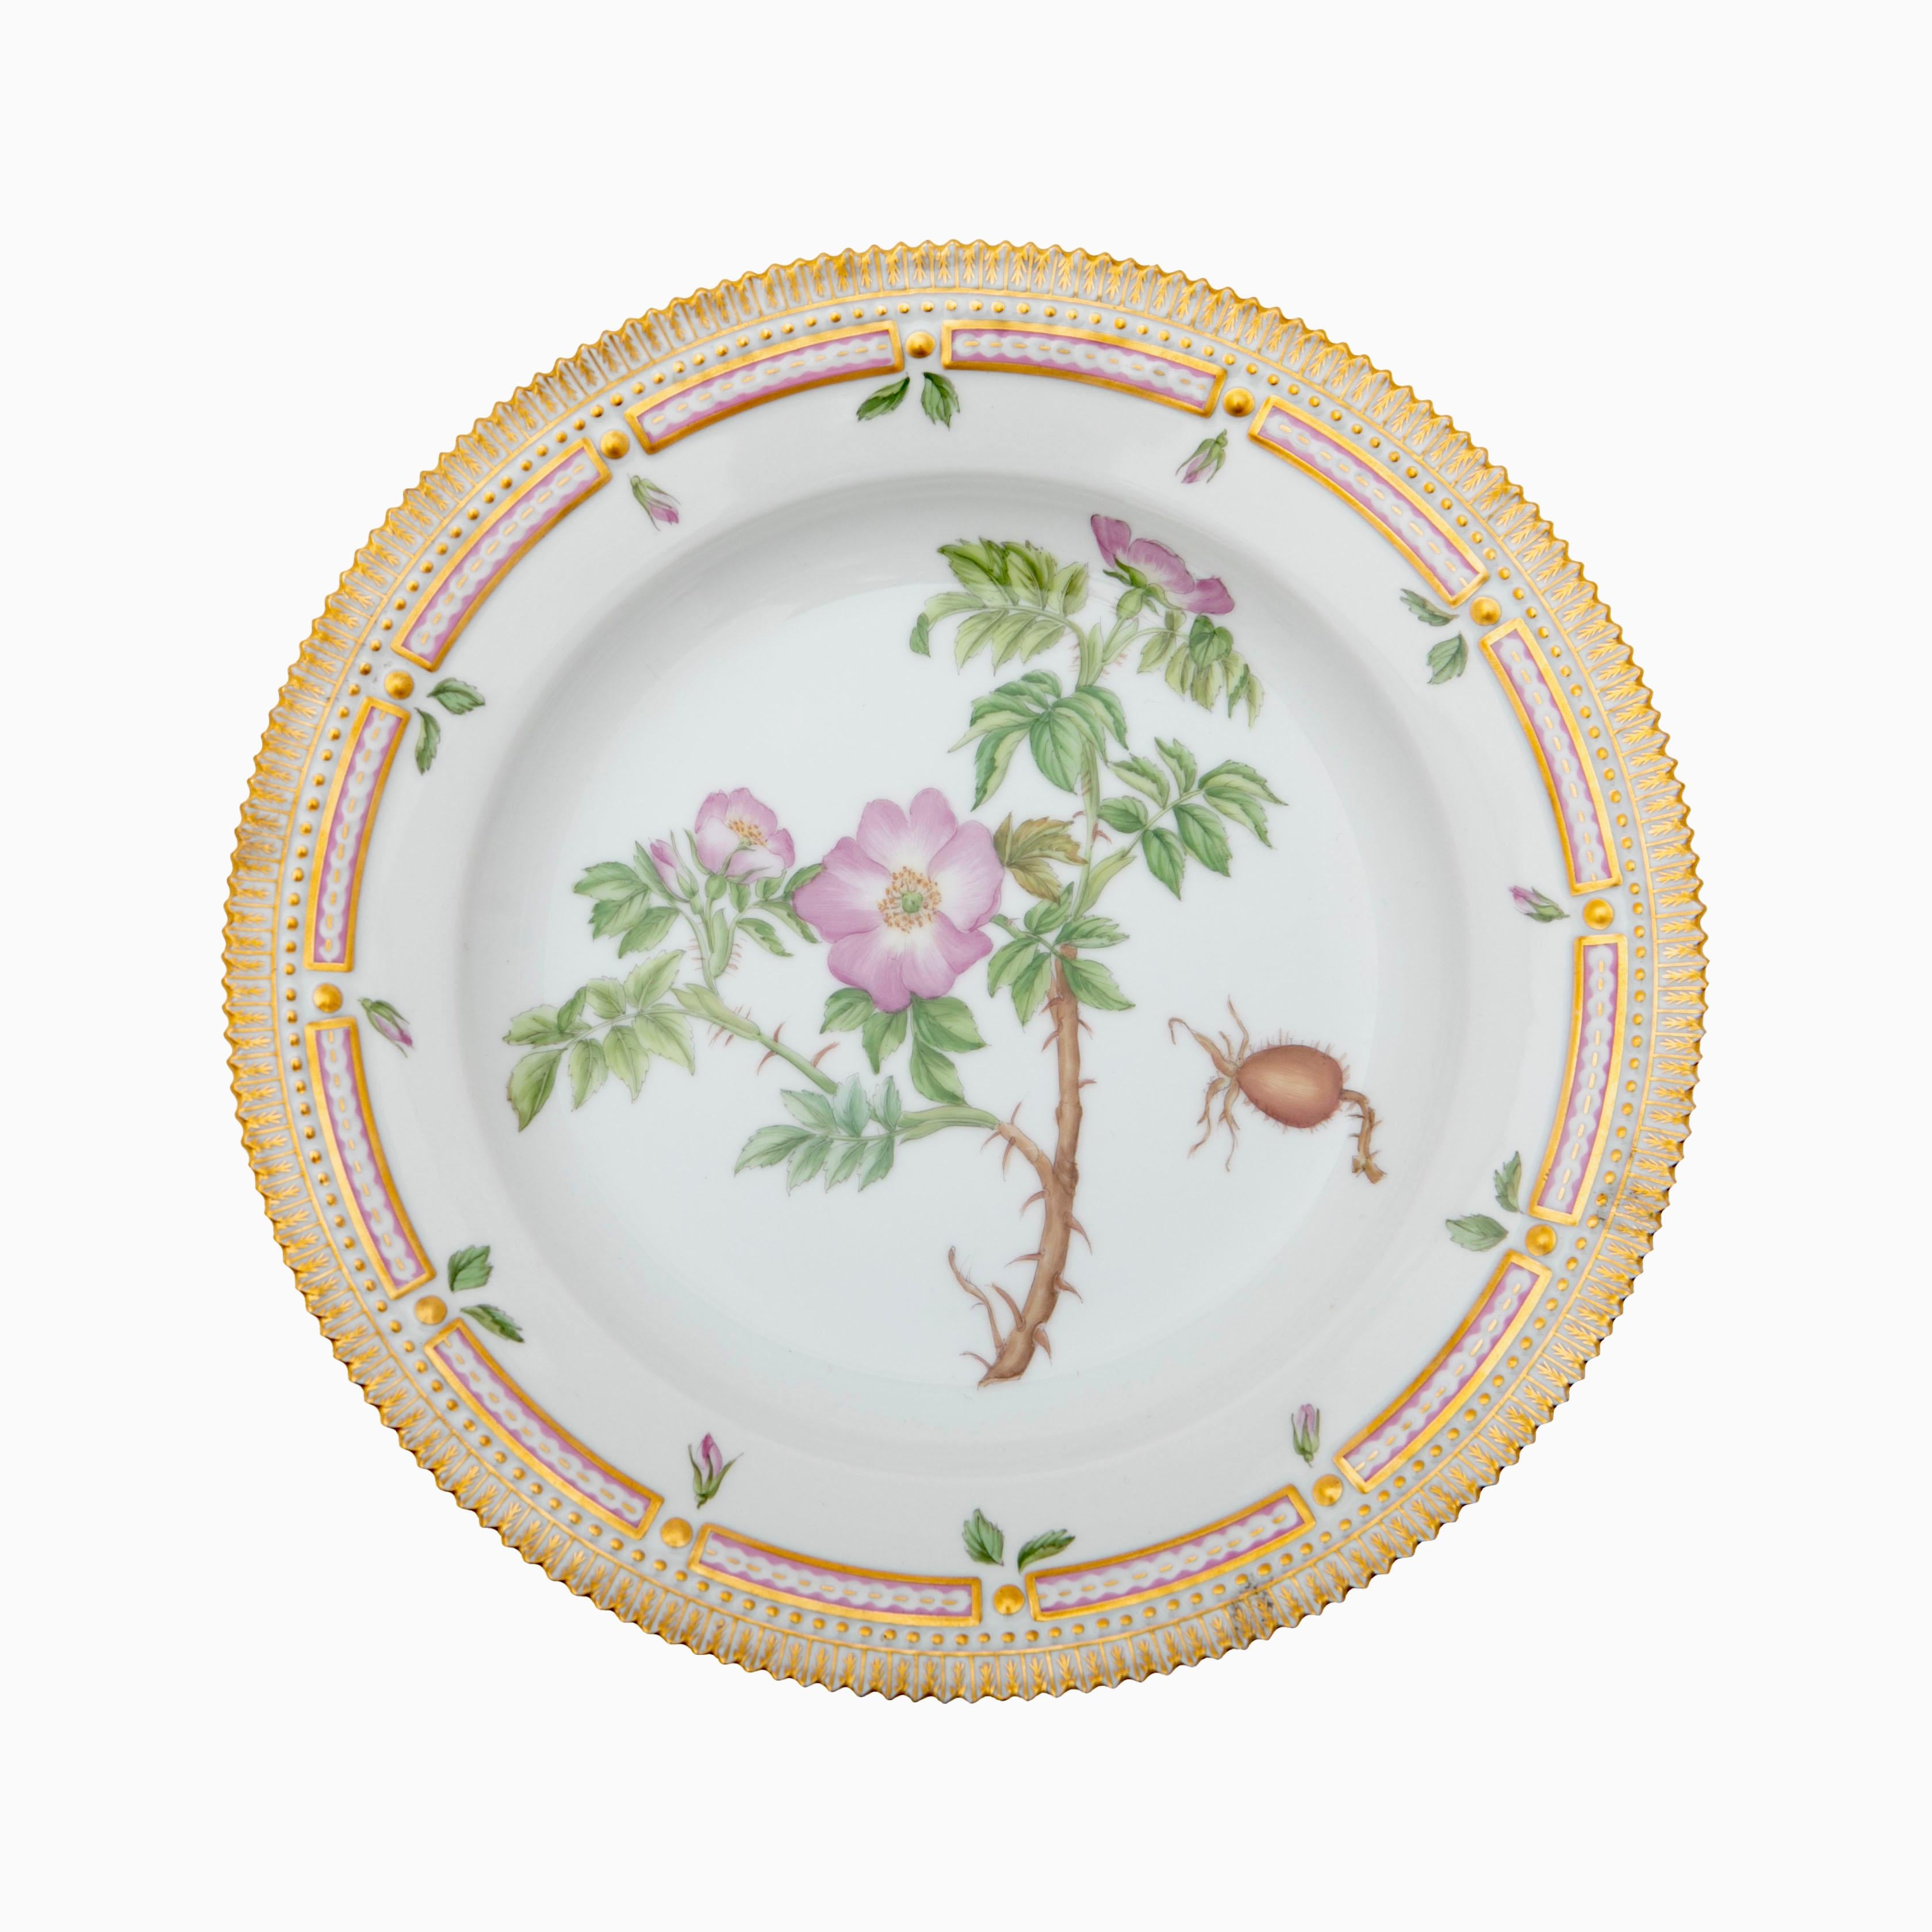 Assiette plate Flora Danica en porcelaine de Royal Copenhagen. Peint à la main. Dia : 25,5 cm.
Marques 